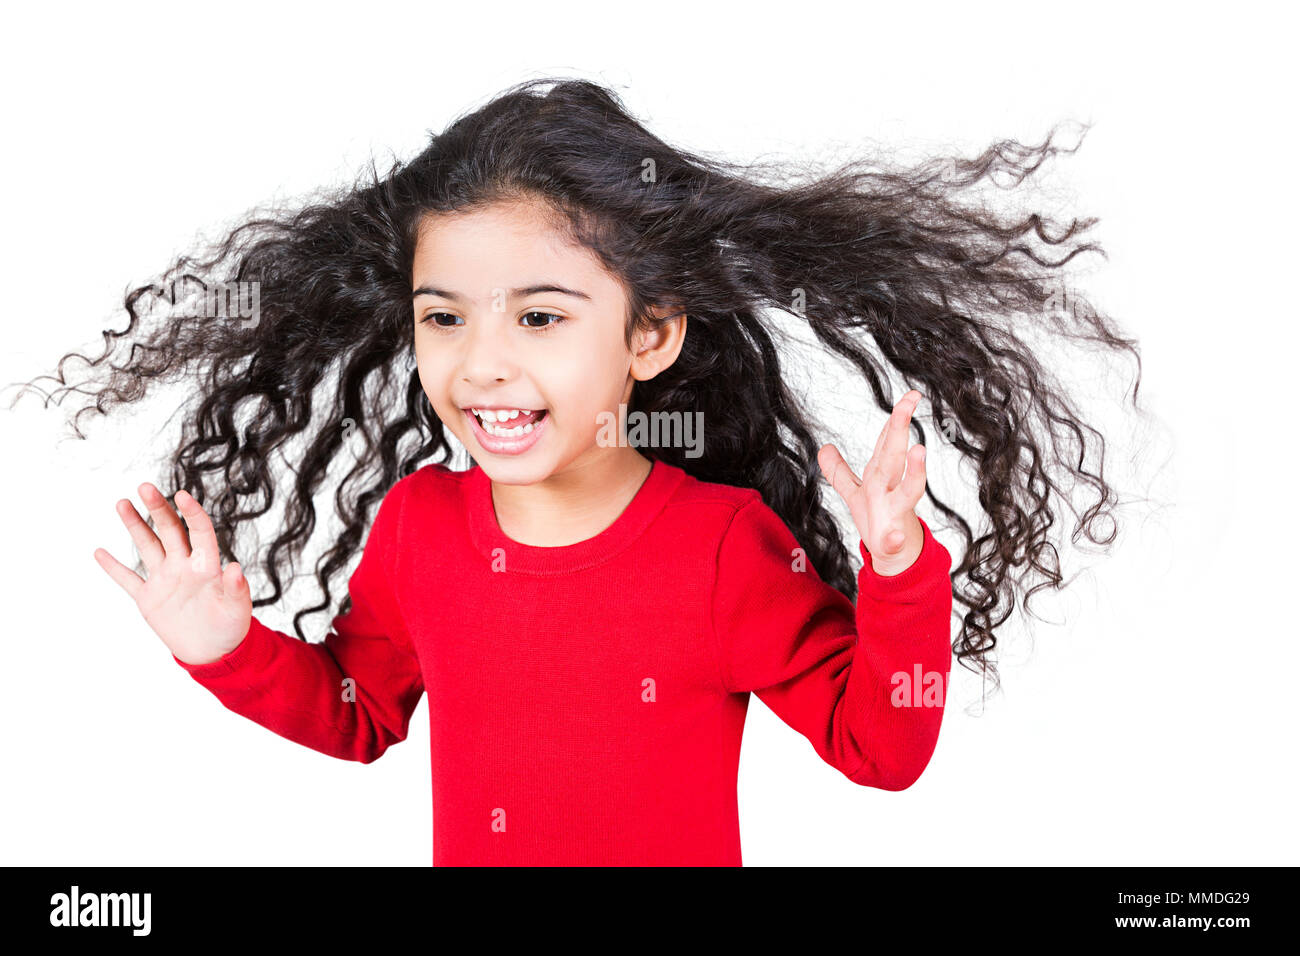 Lachend ein Kind Mädchen zerzaustem Haar Spaß fröhliche Genießen Stockfoto